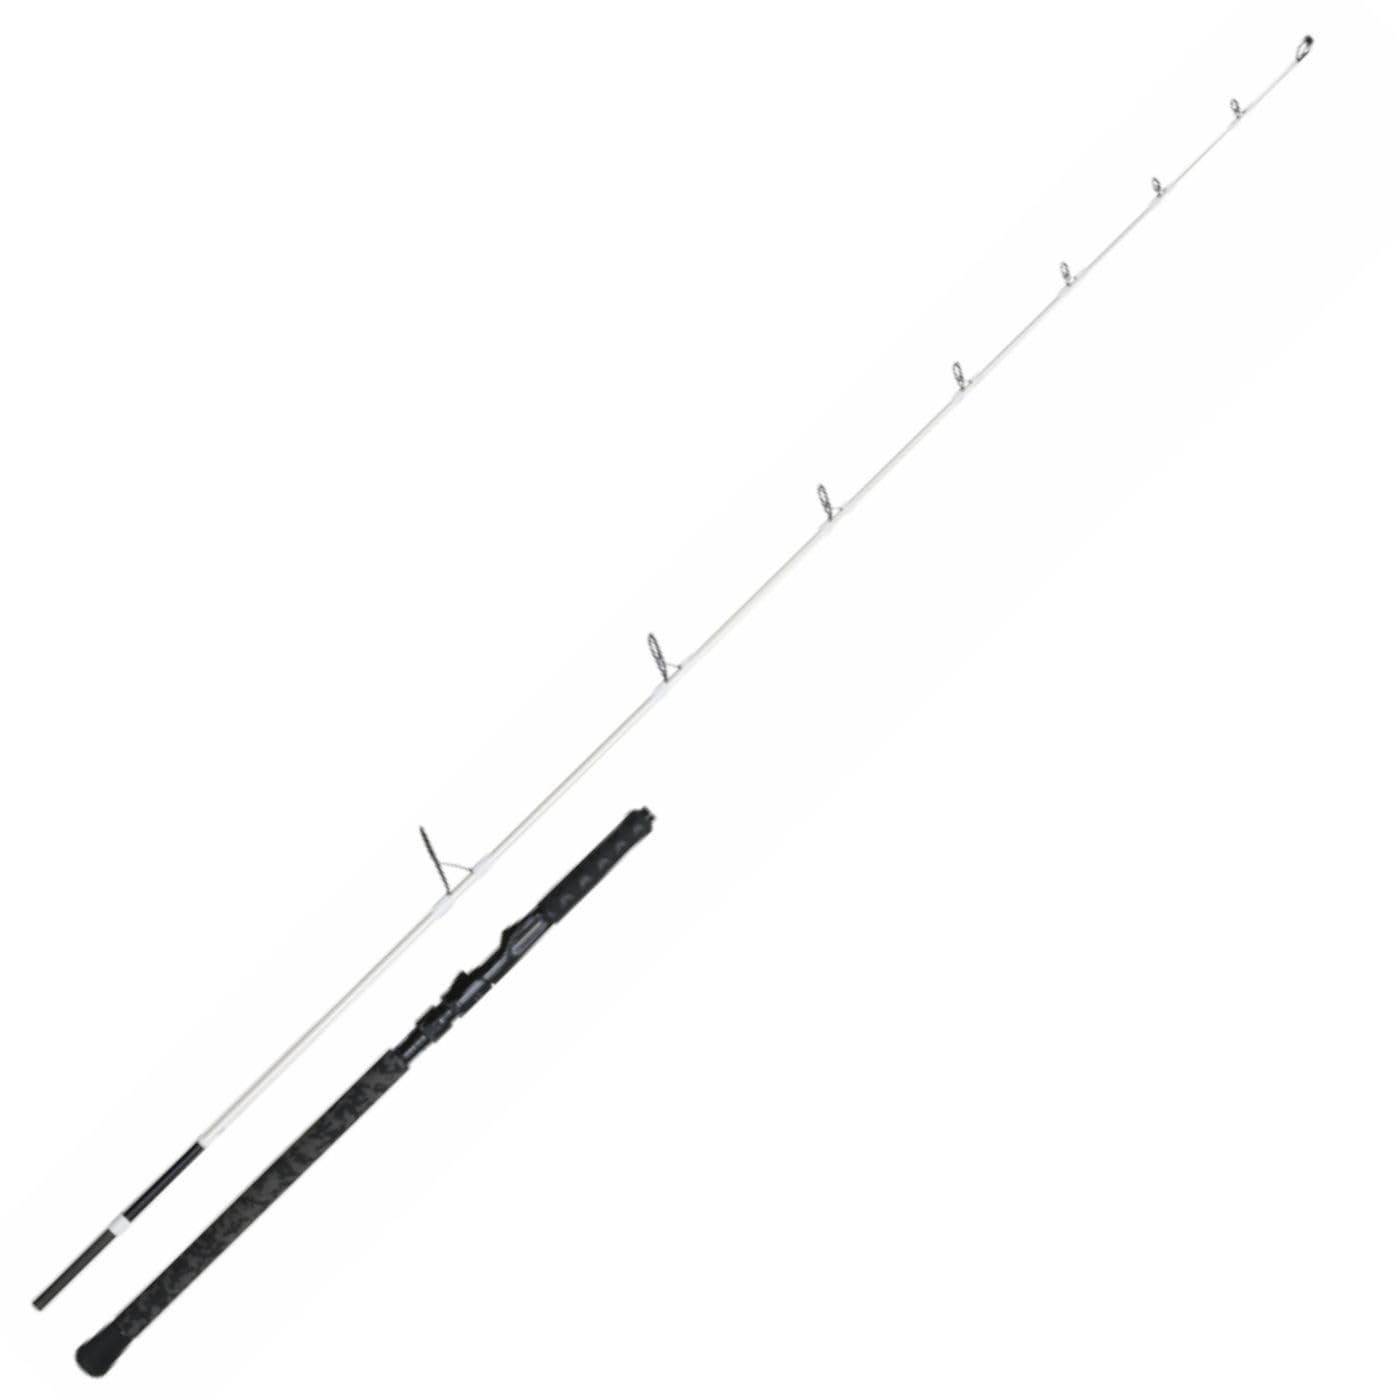 Madcat White Light Spin 2,10m 50-110g - Spinnrute zum Angeln auf Raubfische, Gute Angelrute zum Spinnfischen, Steckrute